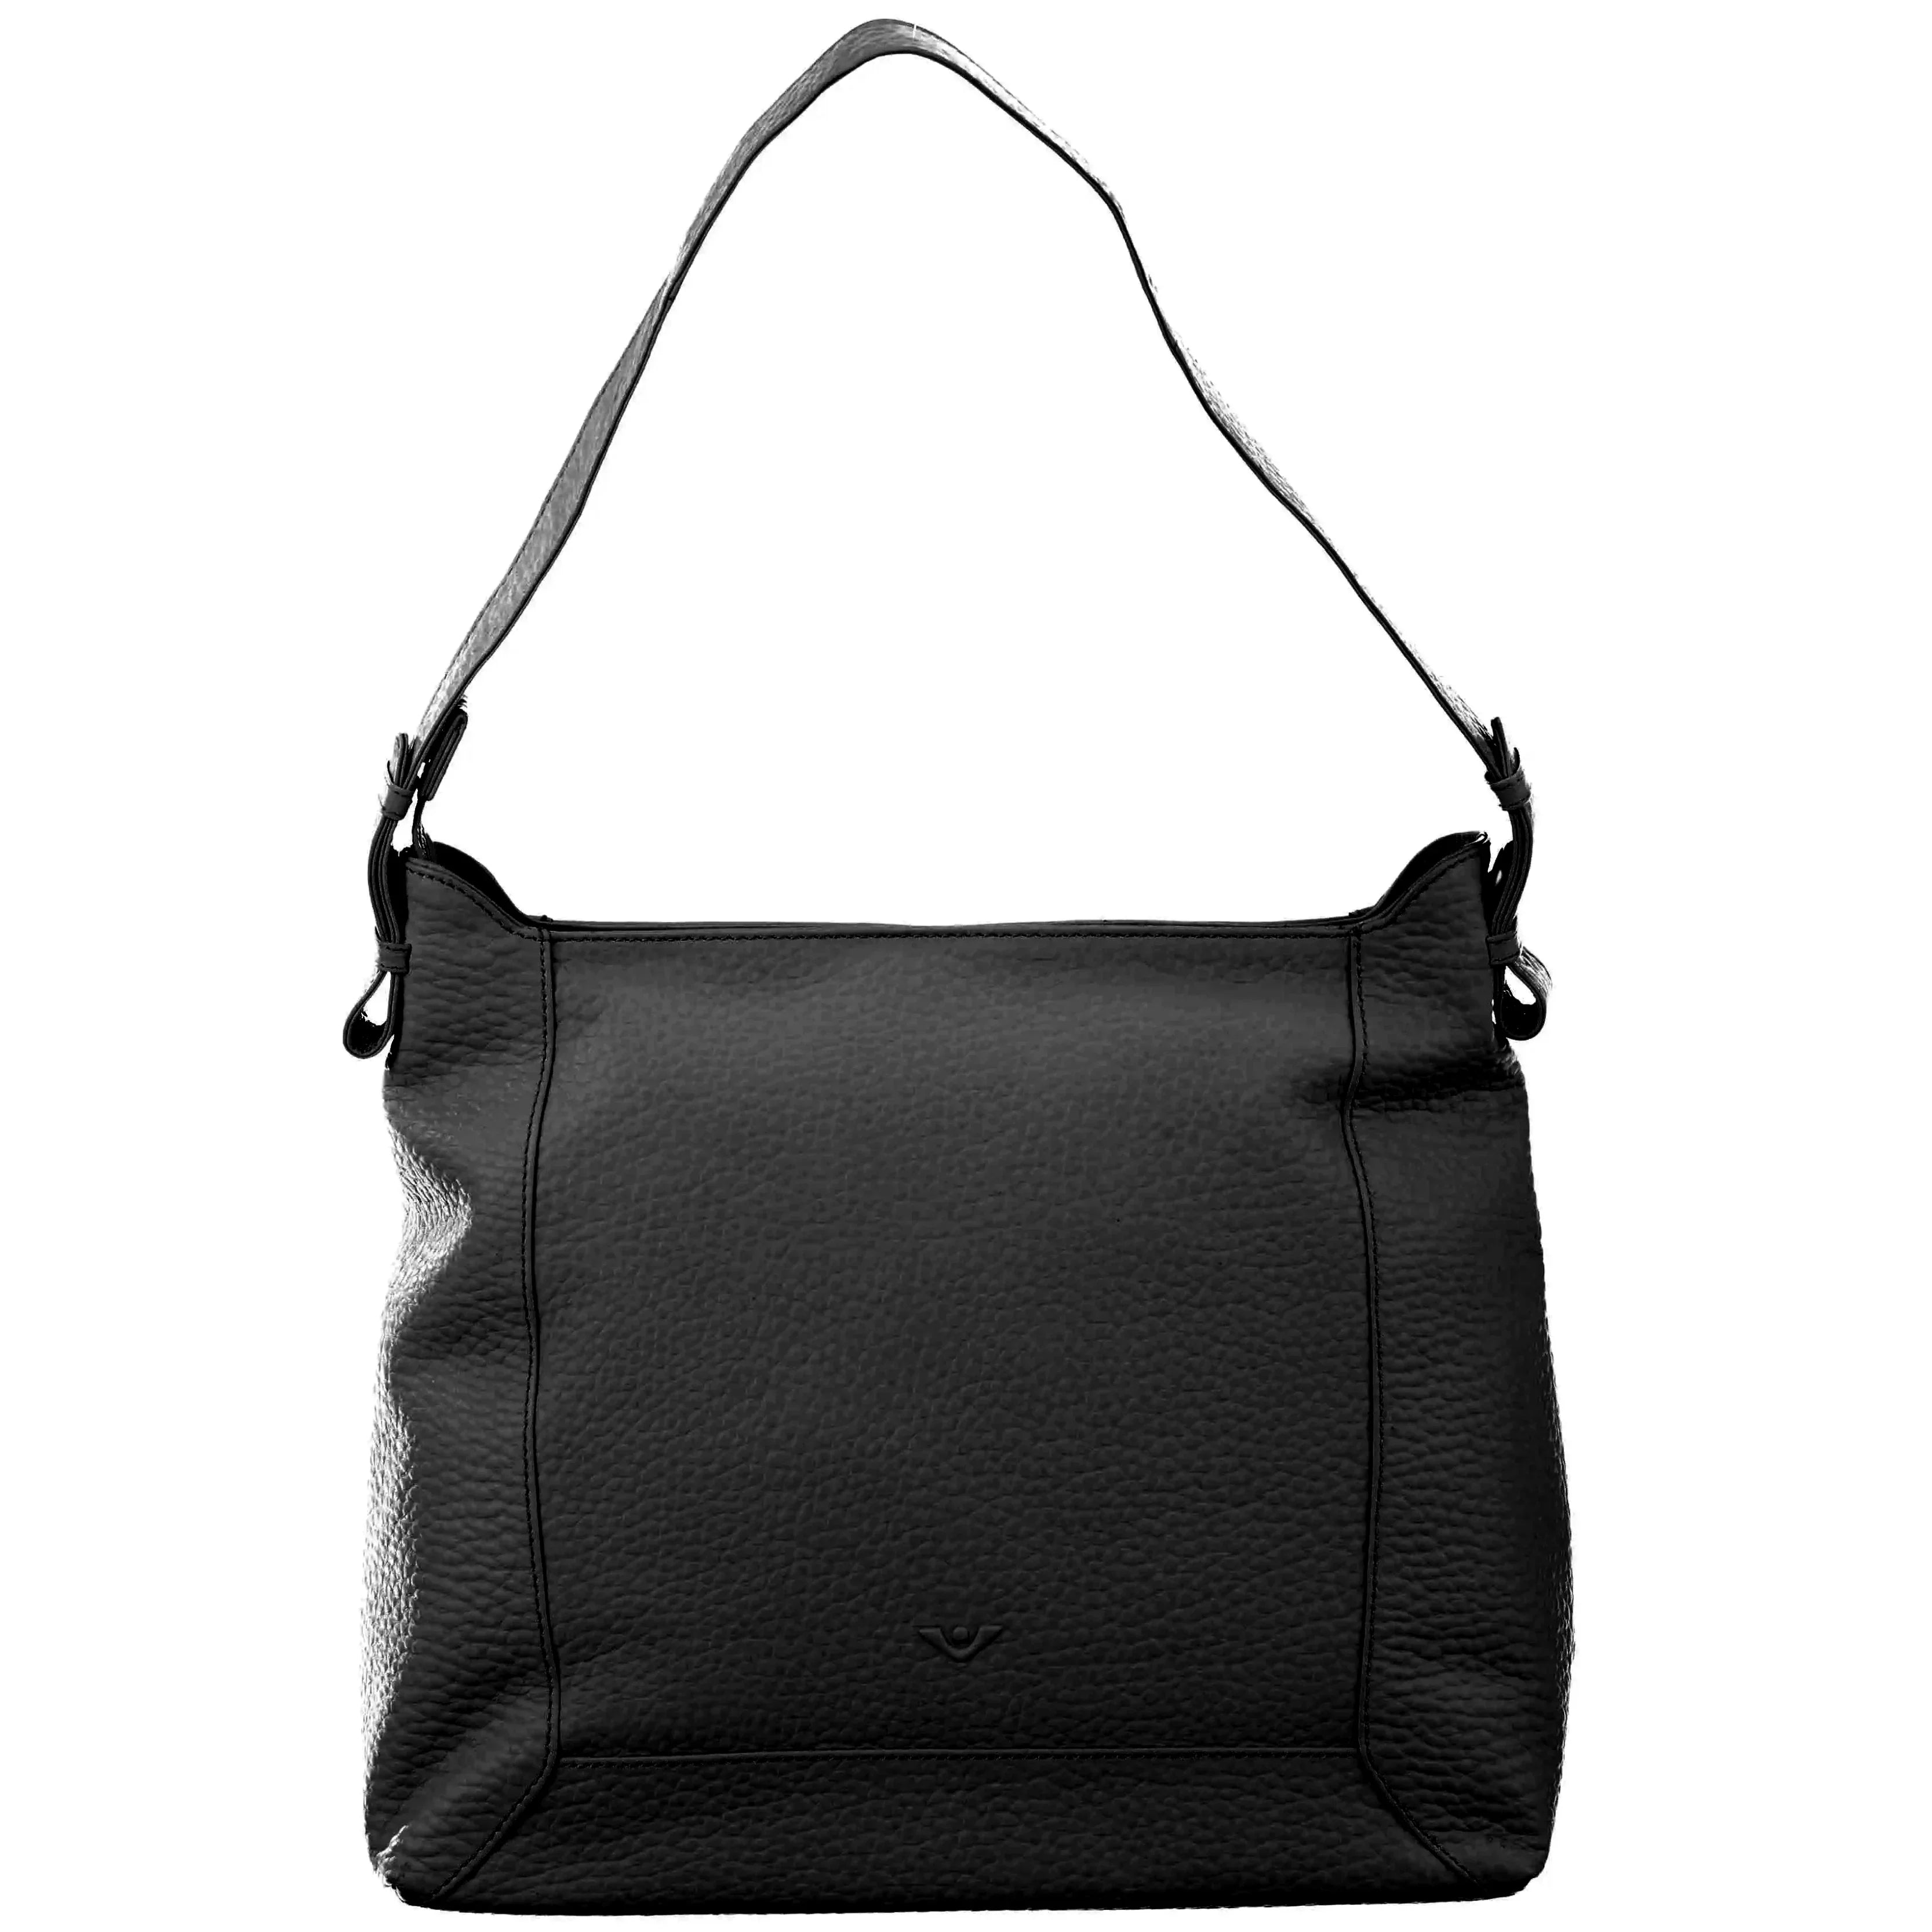 VOi-Design Hirsch Hedi shoulder bag 35 cm - Black